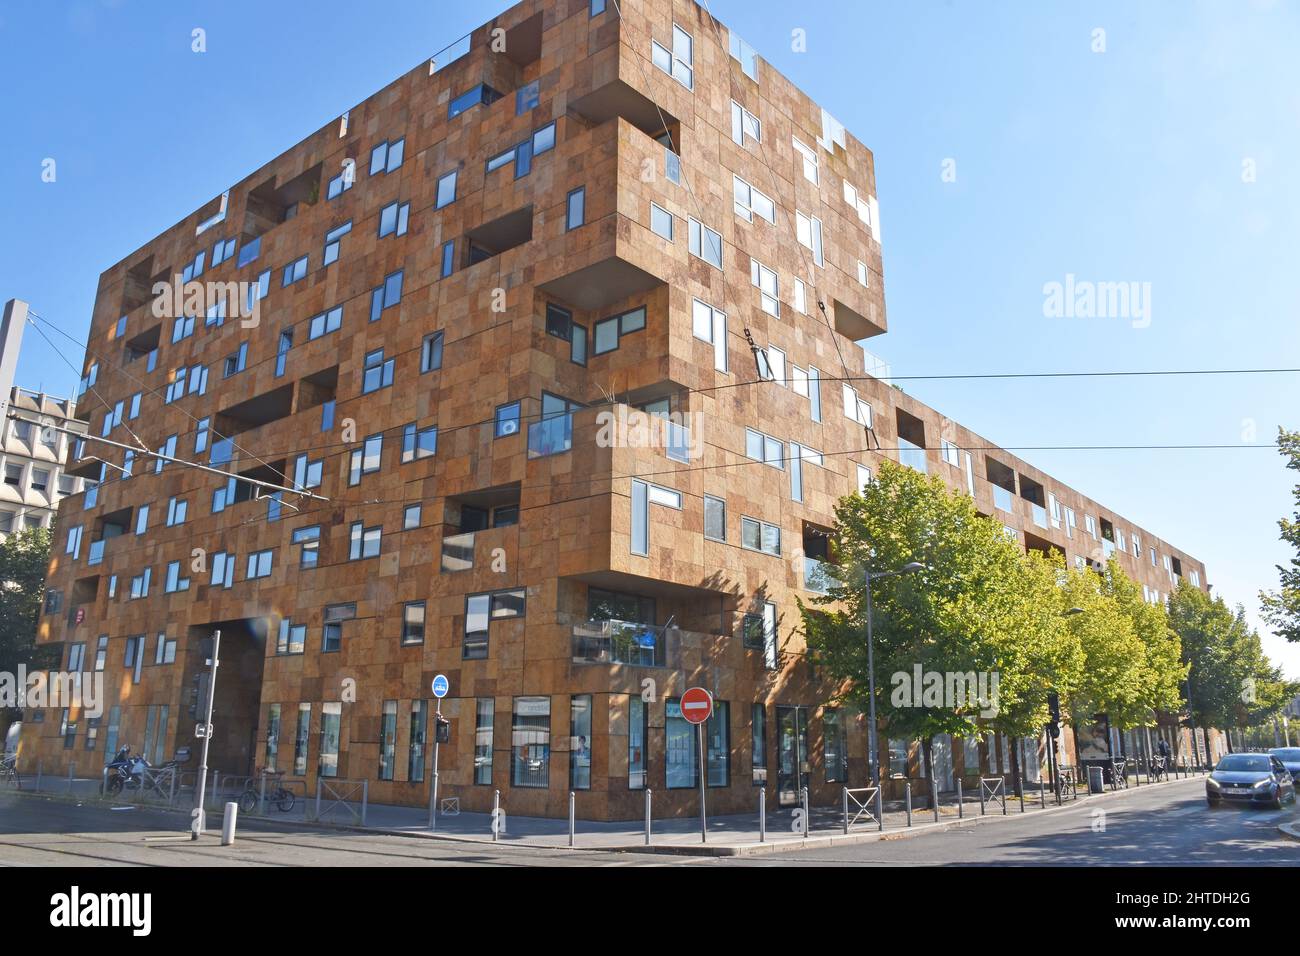 Square Pey Berland, un edificio de apartamentos grande y moderno en Burdeos, la mayoría de 8 pisos, algo parecido a una apariencia de Lego, varios tonos de revestimiento de piedra marrón Foto de stock